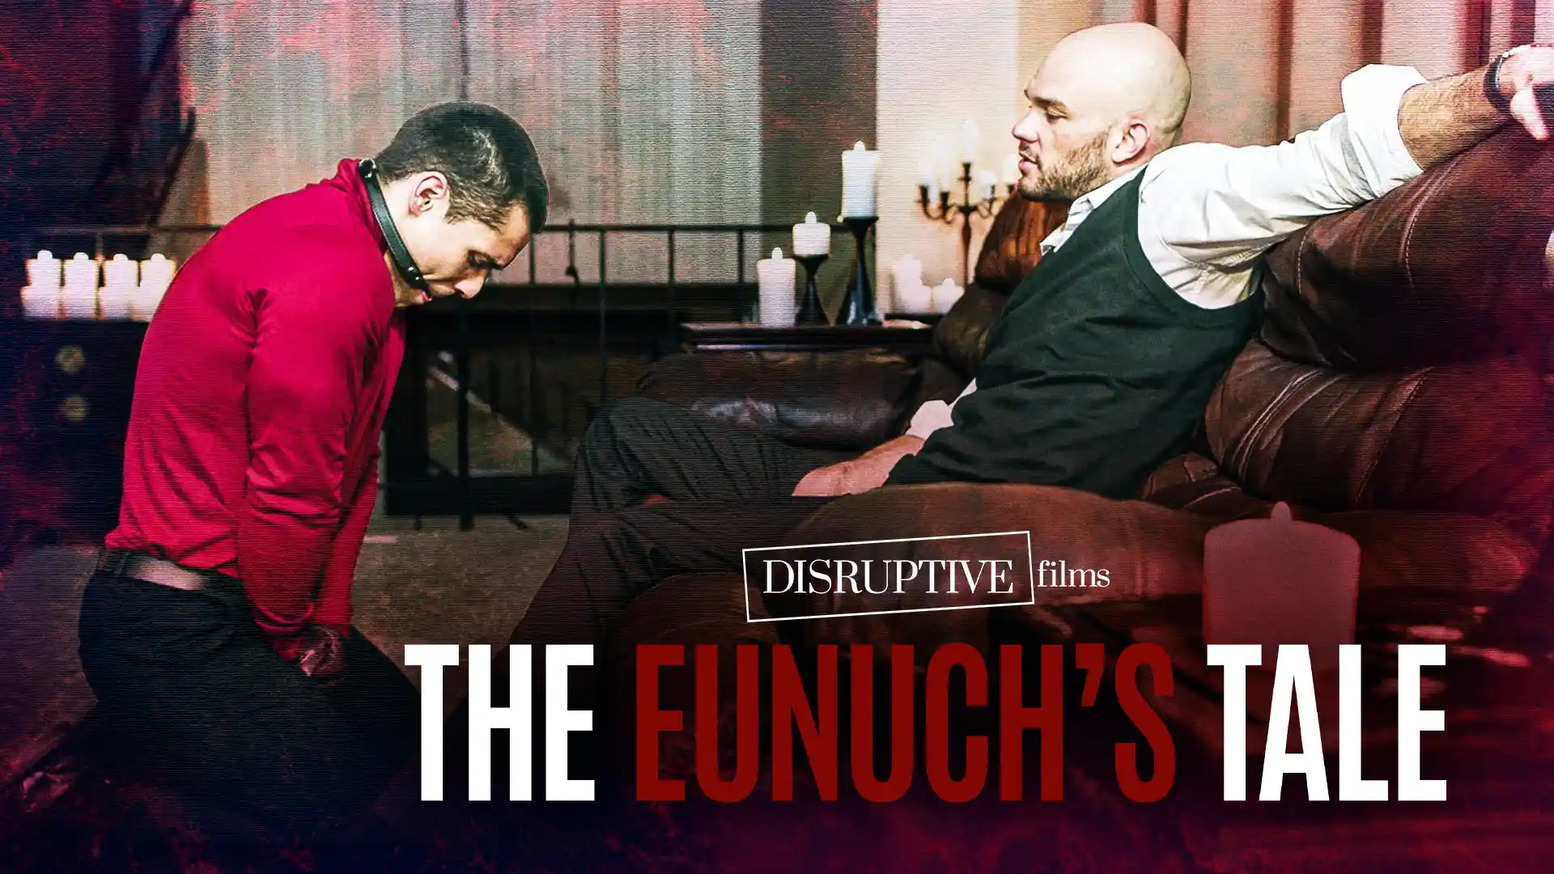 The Eunuch's Tale